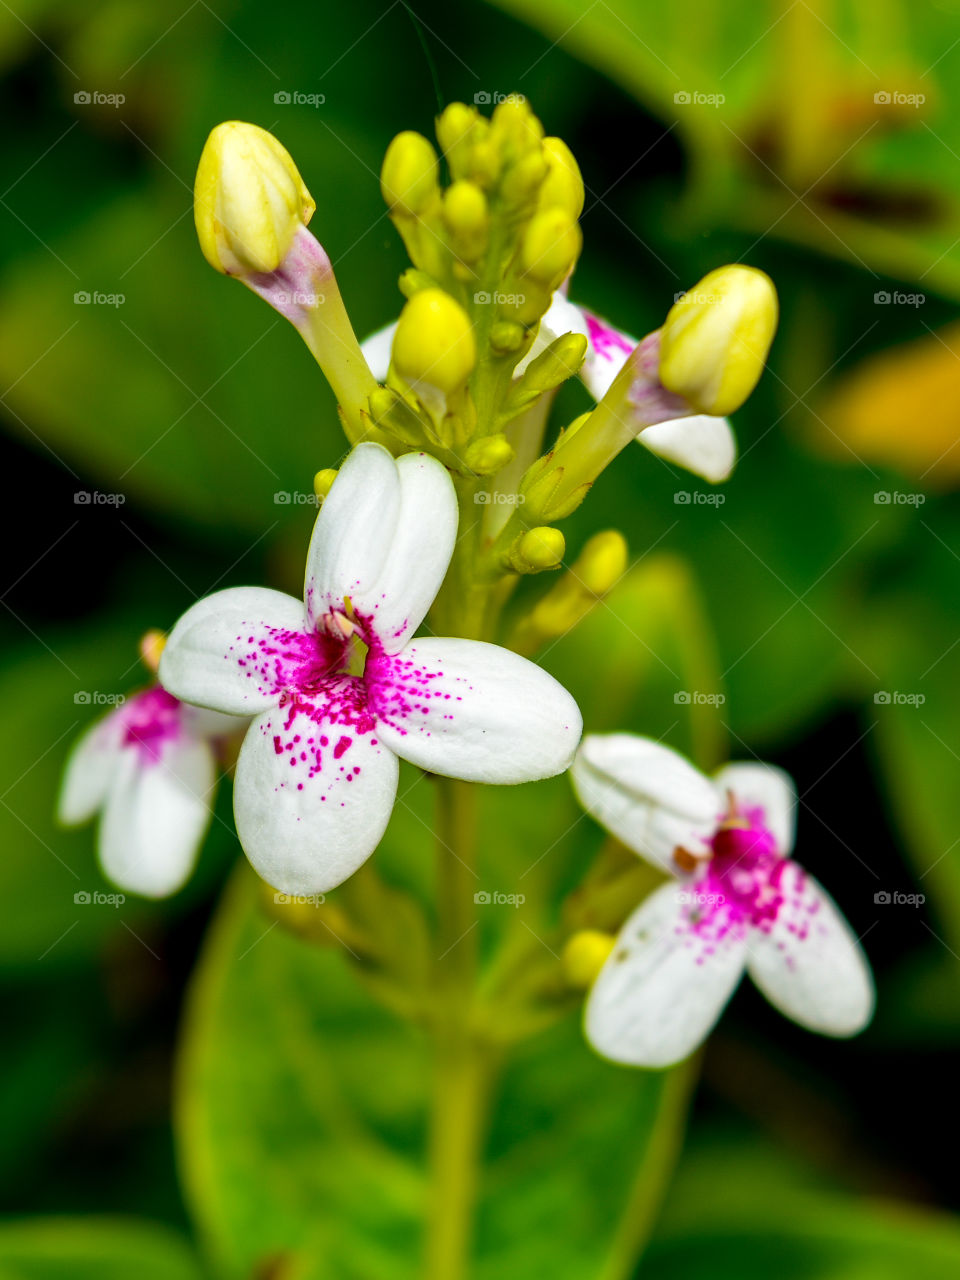 PurpleJasmine (Pseuderanthemum Reticulatum)